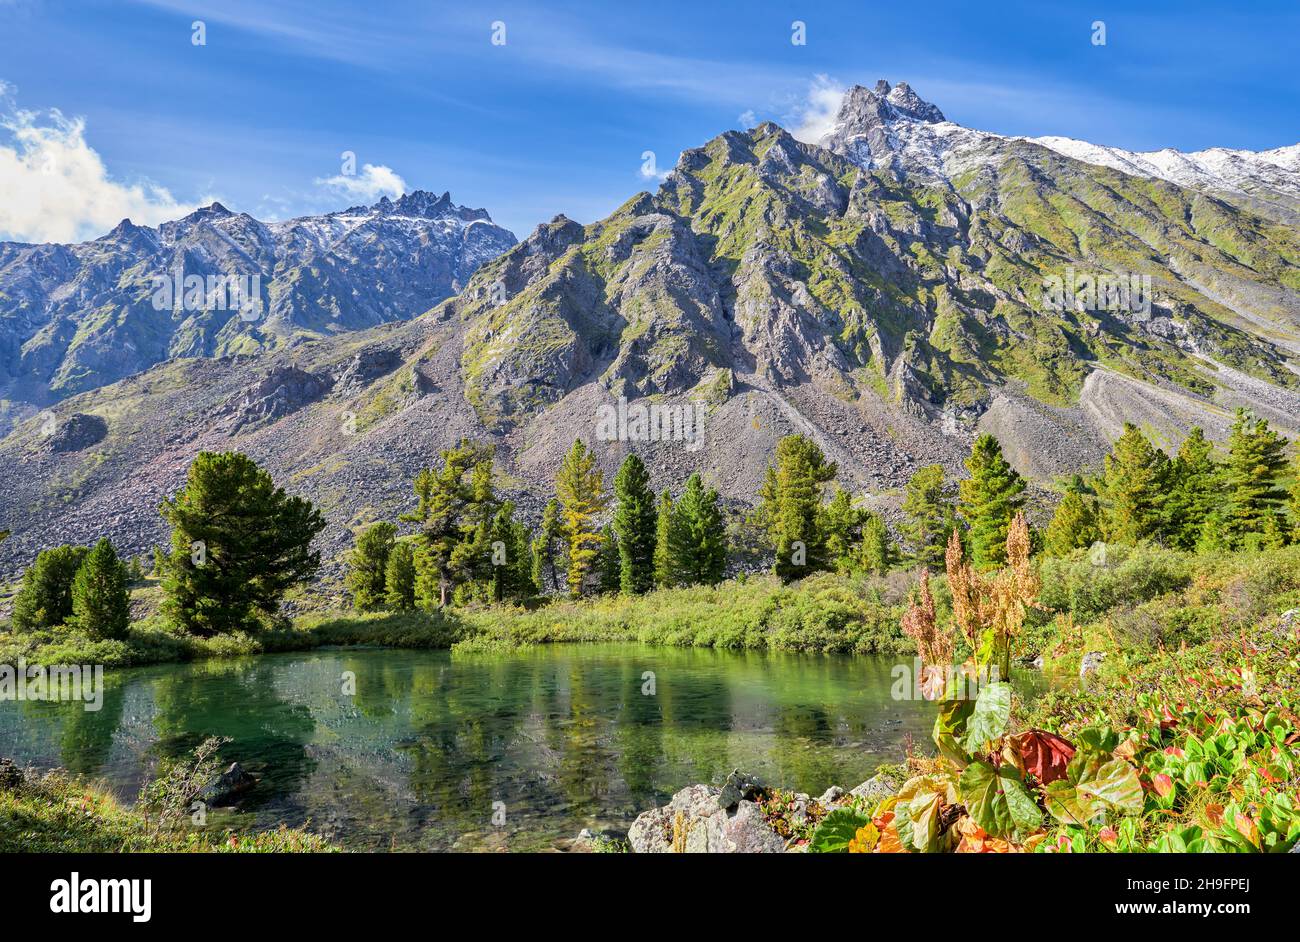 Un petit lac au pied d'un sommet de montagne.Rhubarbe avec épis de graines au premier plan.Août.Sayan de l'est.Sibérie.Russie Banque D'Images